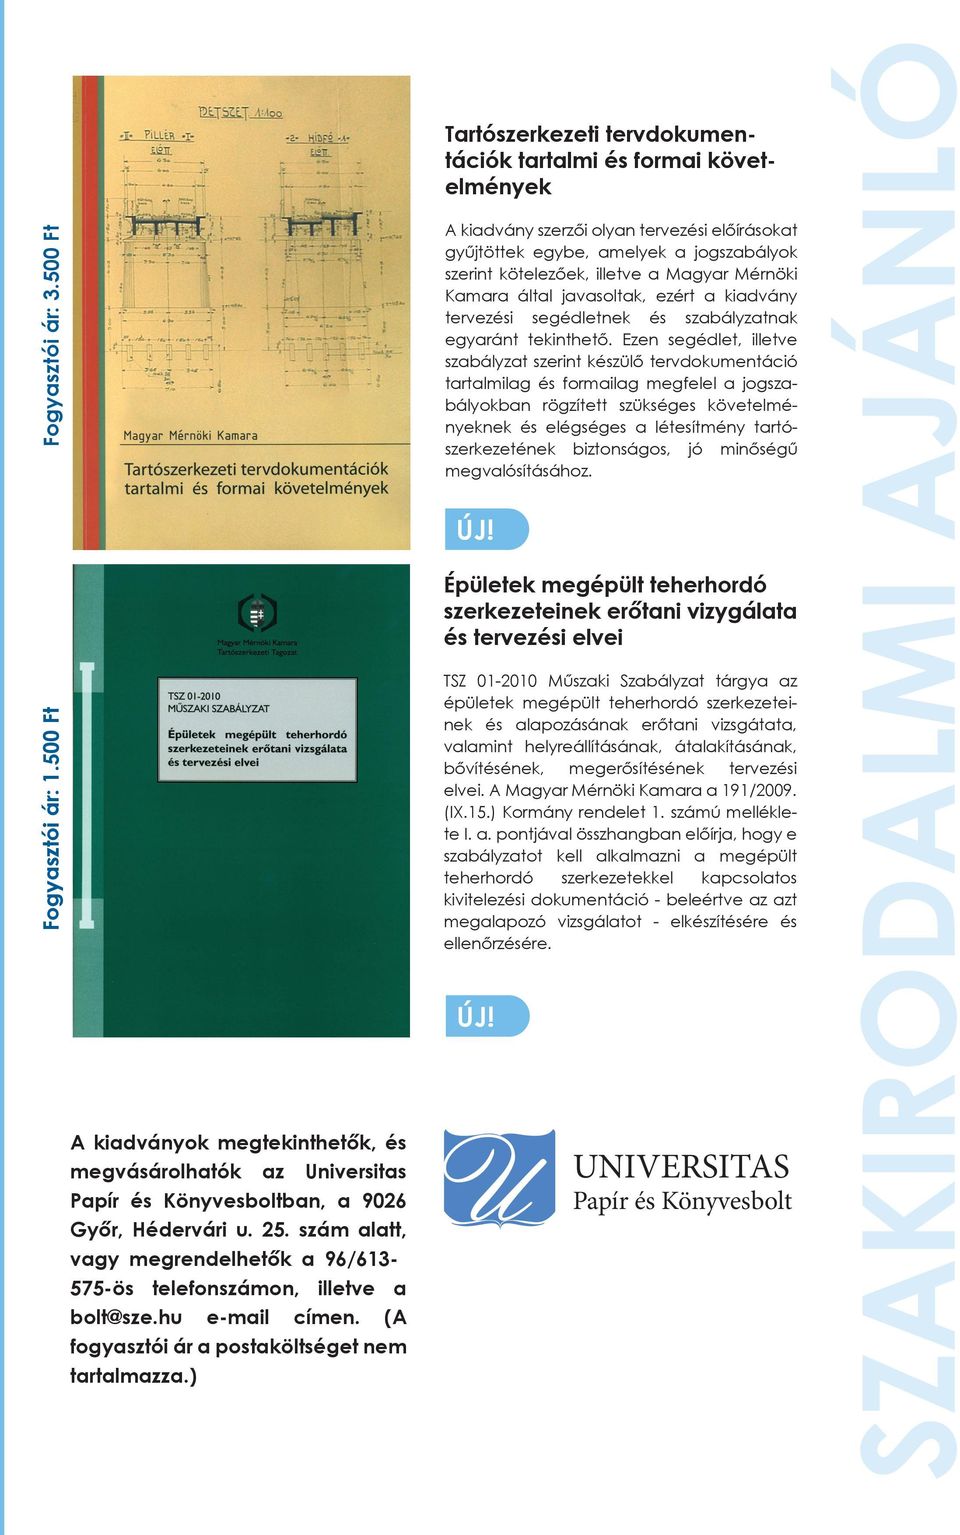 ) Tartószerkezeti tervdokumentációk tartalmi és formai követelmények A kiadvány szerzői olyan tervezési előírásokat gyűjtöttek egybe, amelyek a jogszabályok szerint kötelezőek, illetve a Magyar